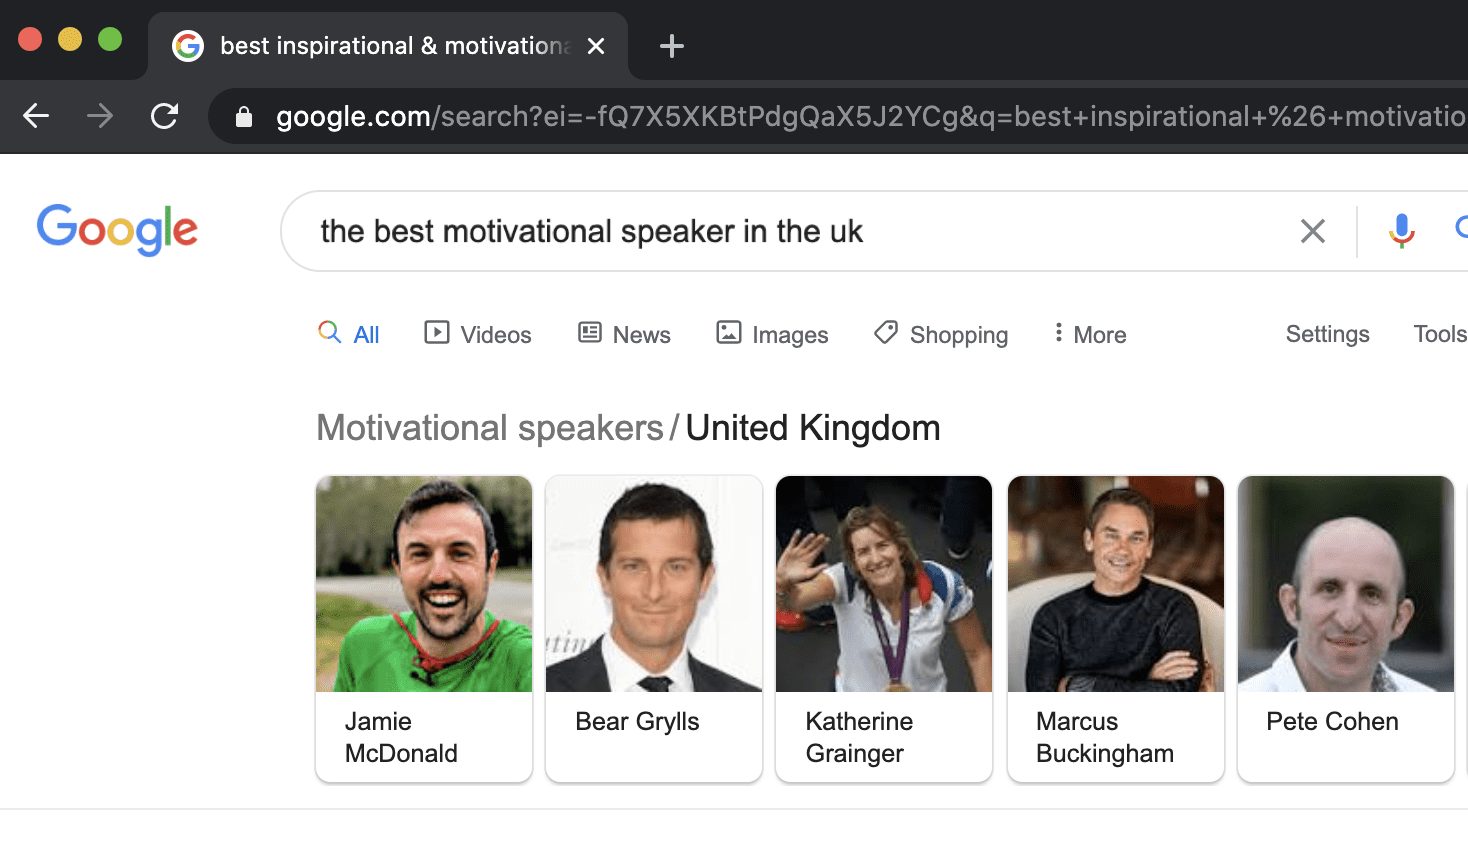 The best motivational speaker in the UK